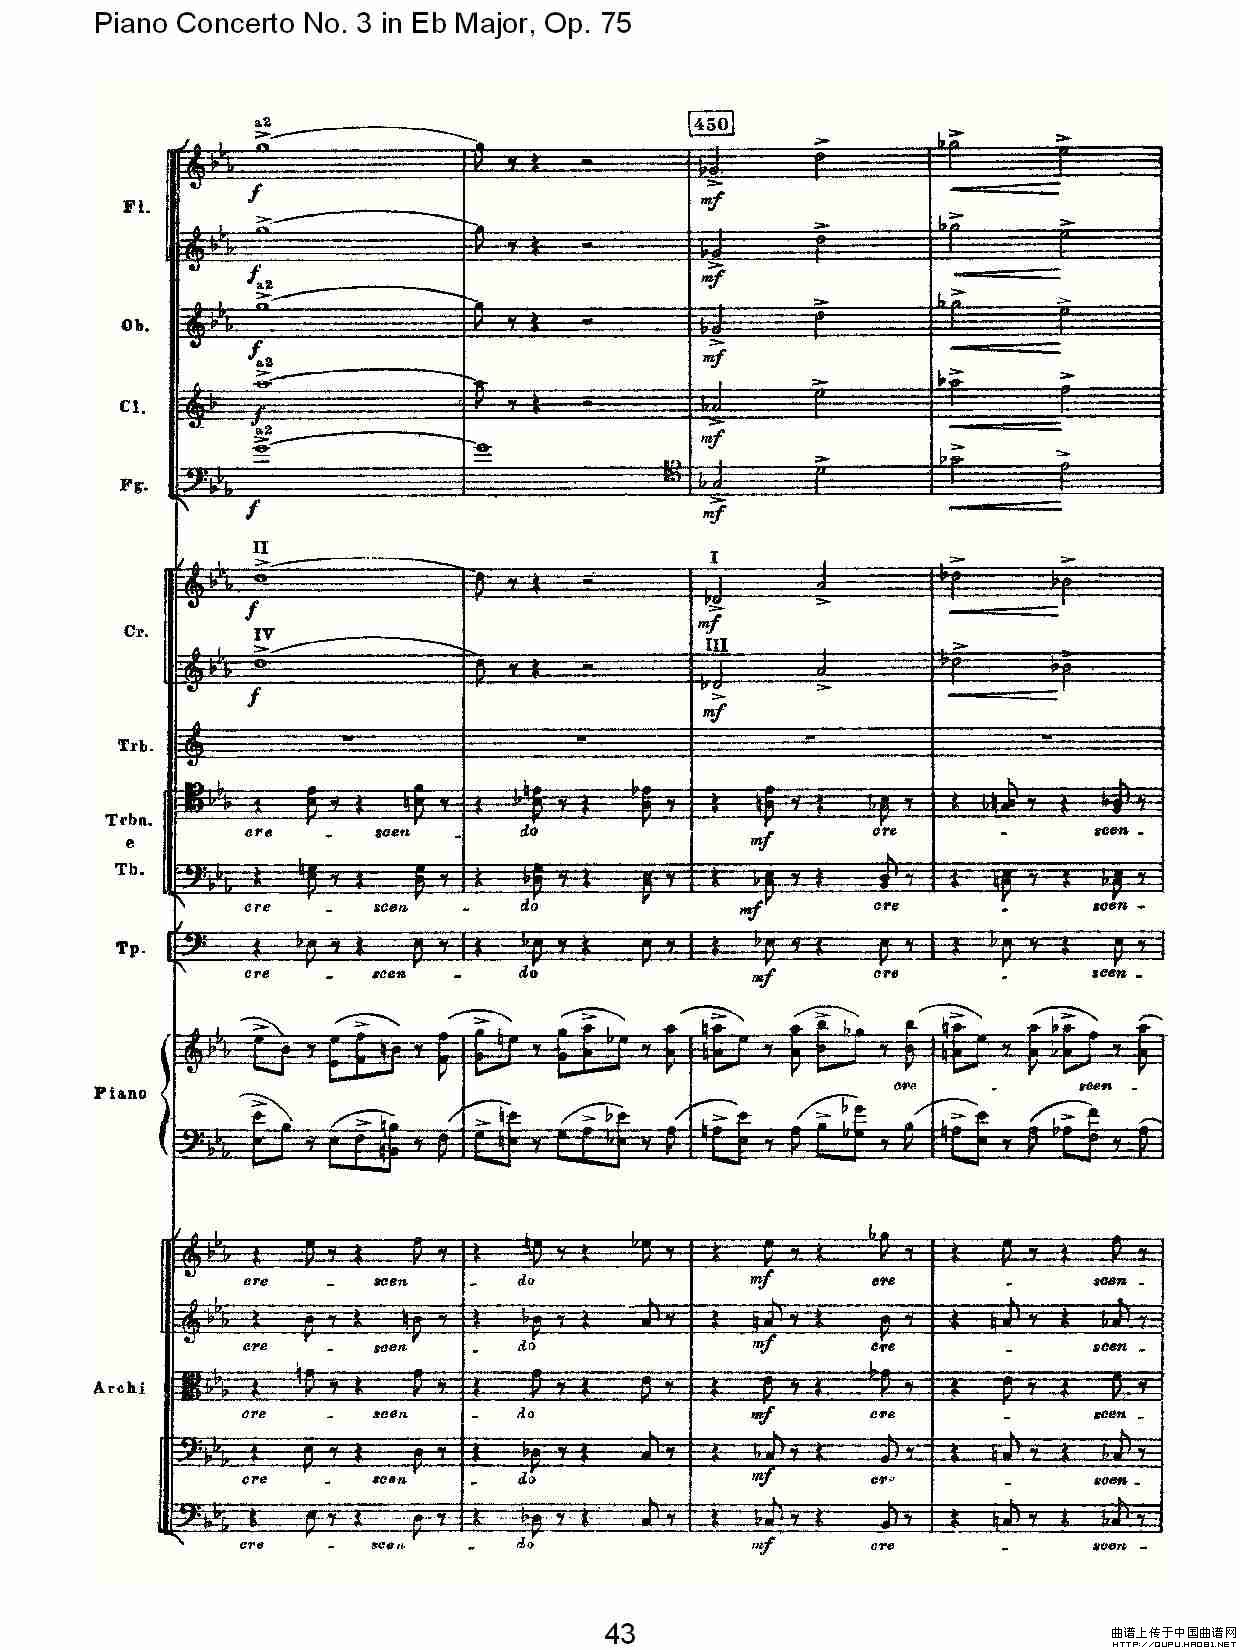 Piano Concerto No.3 in Eb Major, Op.75（Eb大调第三钢琴协奏）(1)_原文件名：Piano Concerto No.3 in Eb Major, Op.7513.jpg